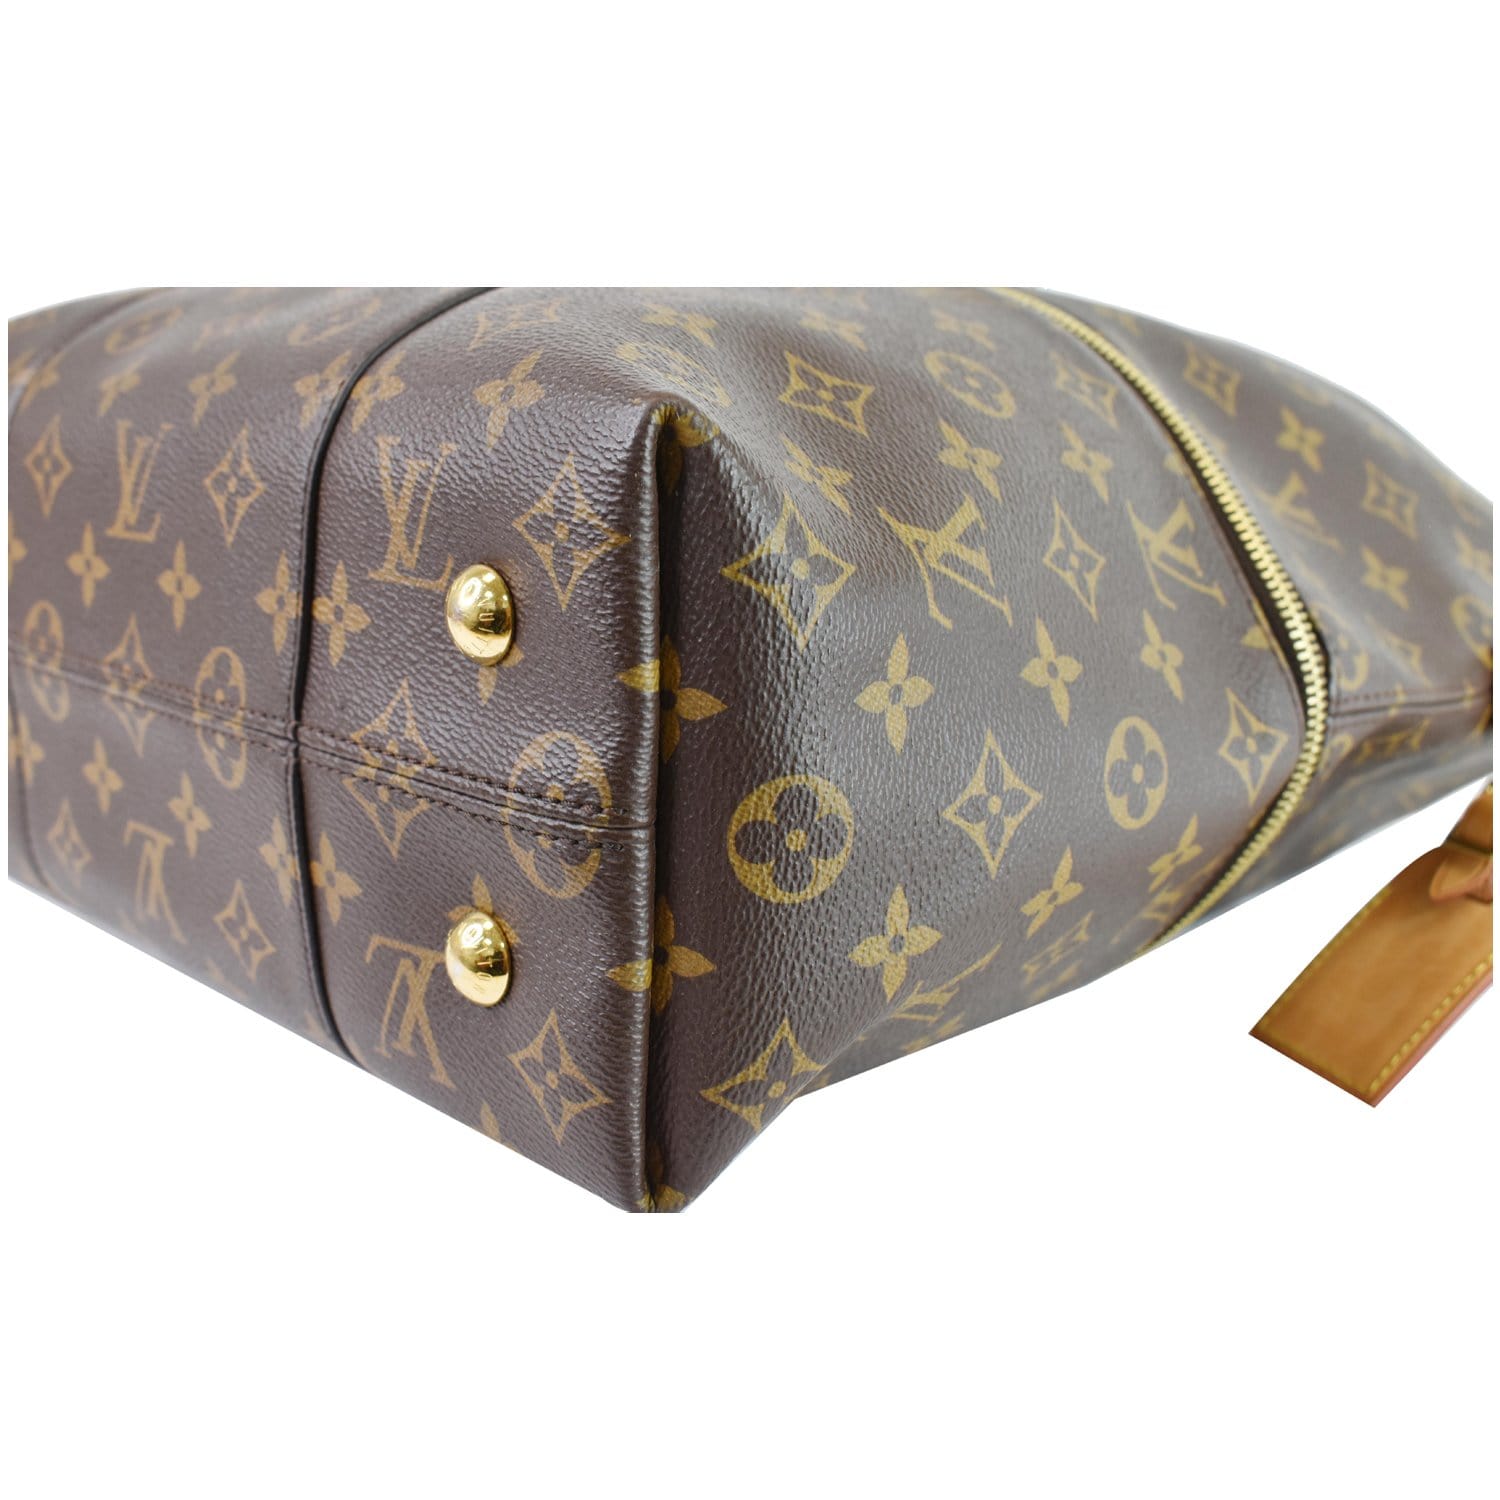 Review: The Louis Vuitton Melie Bag – My Bag Files